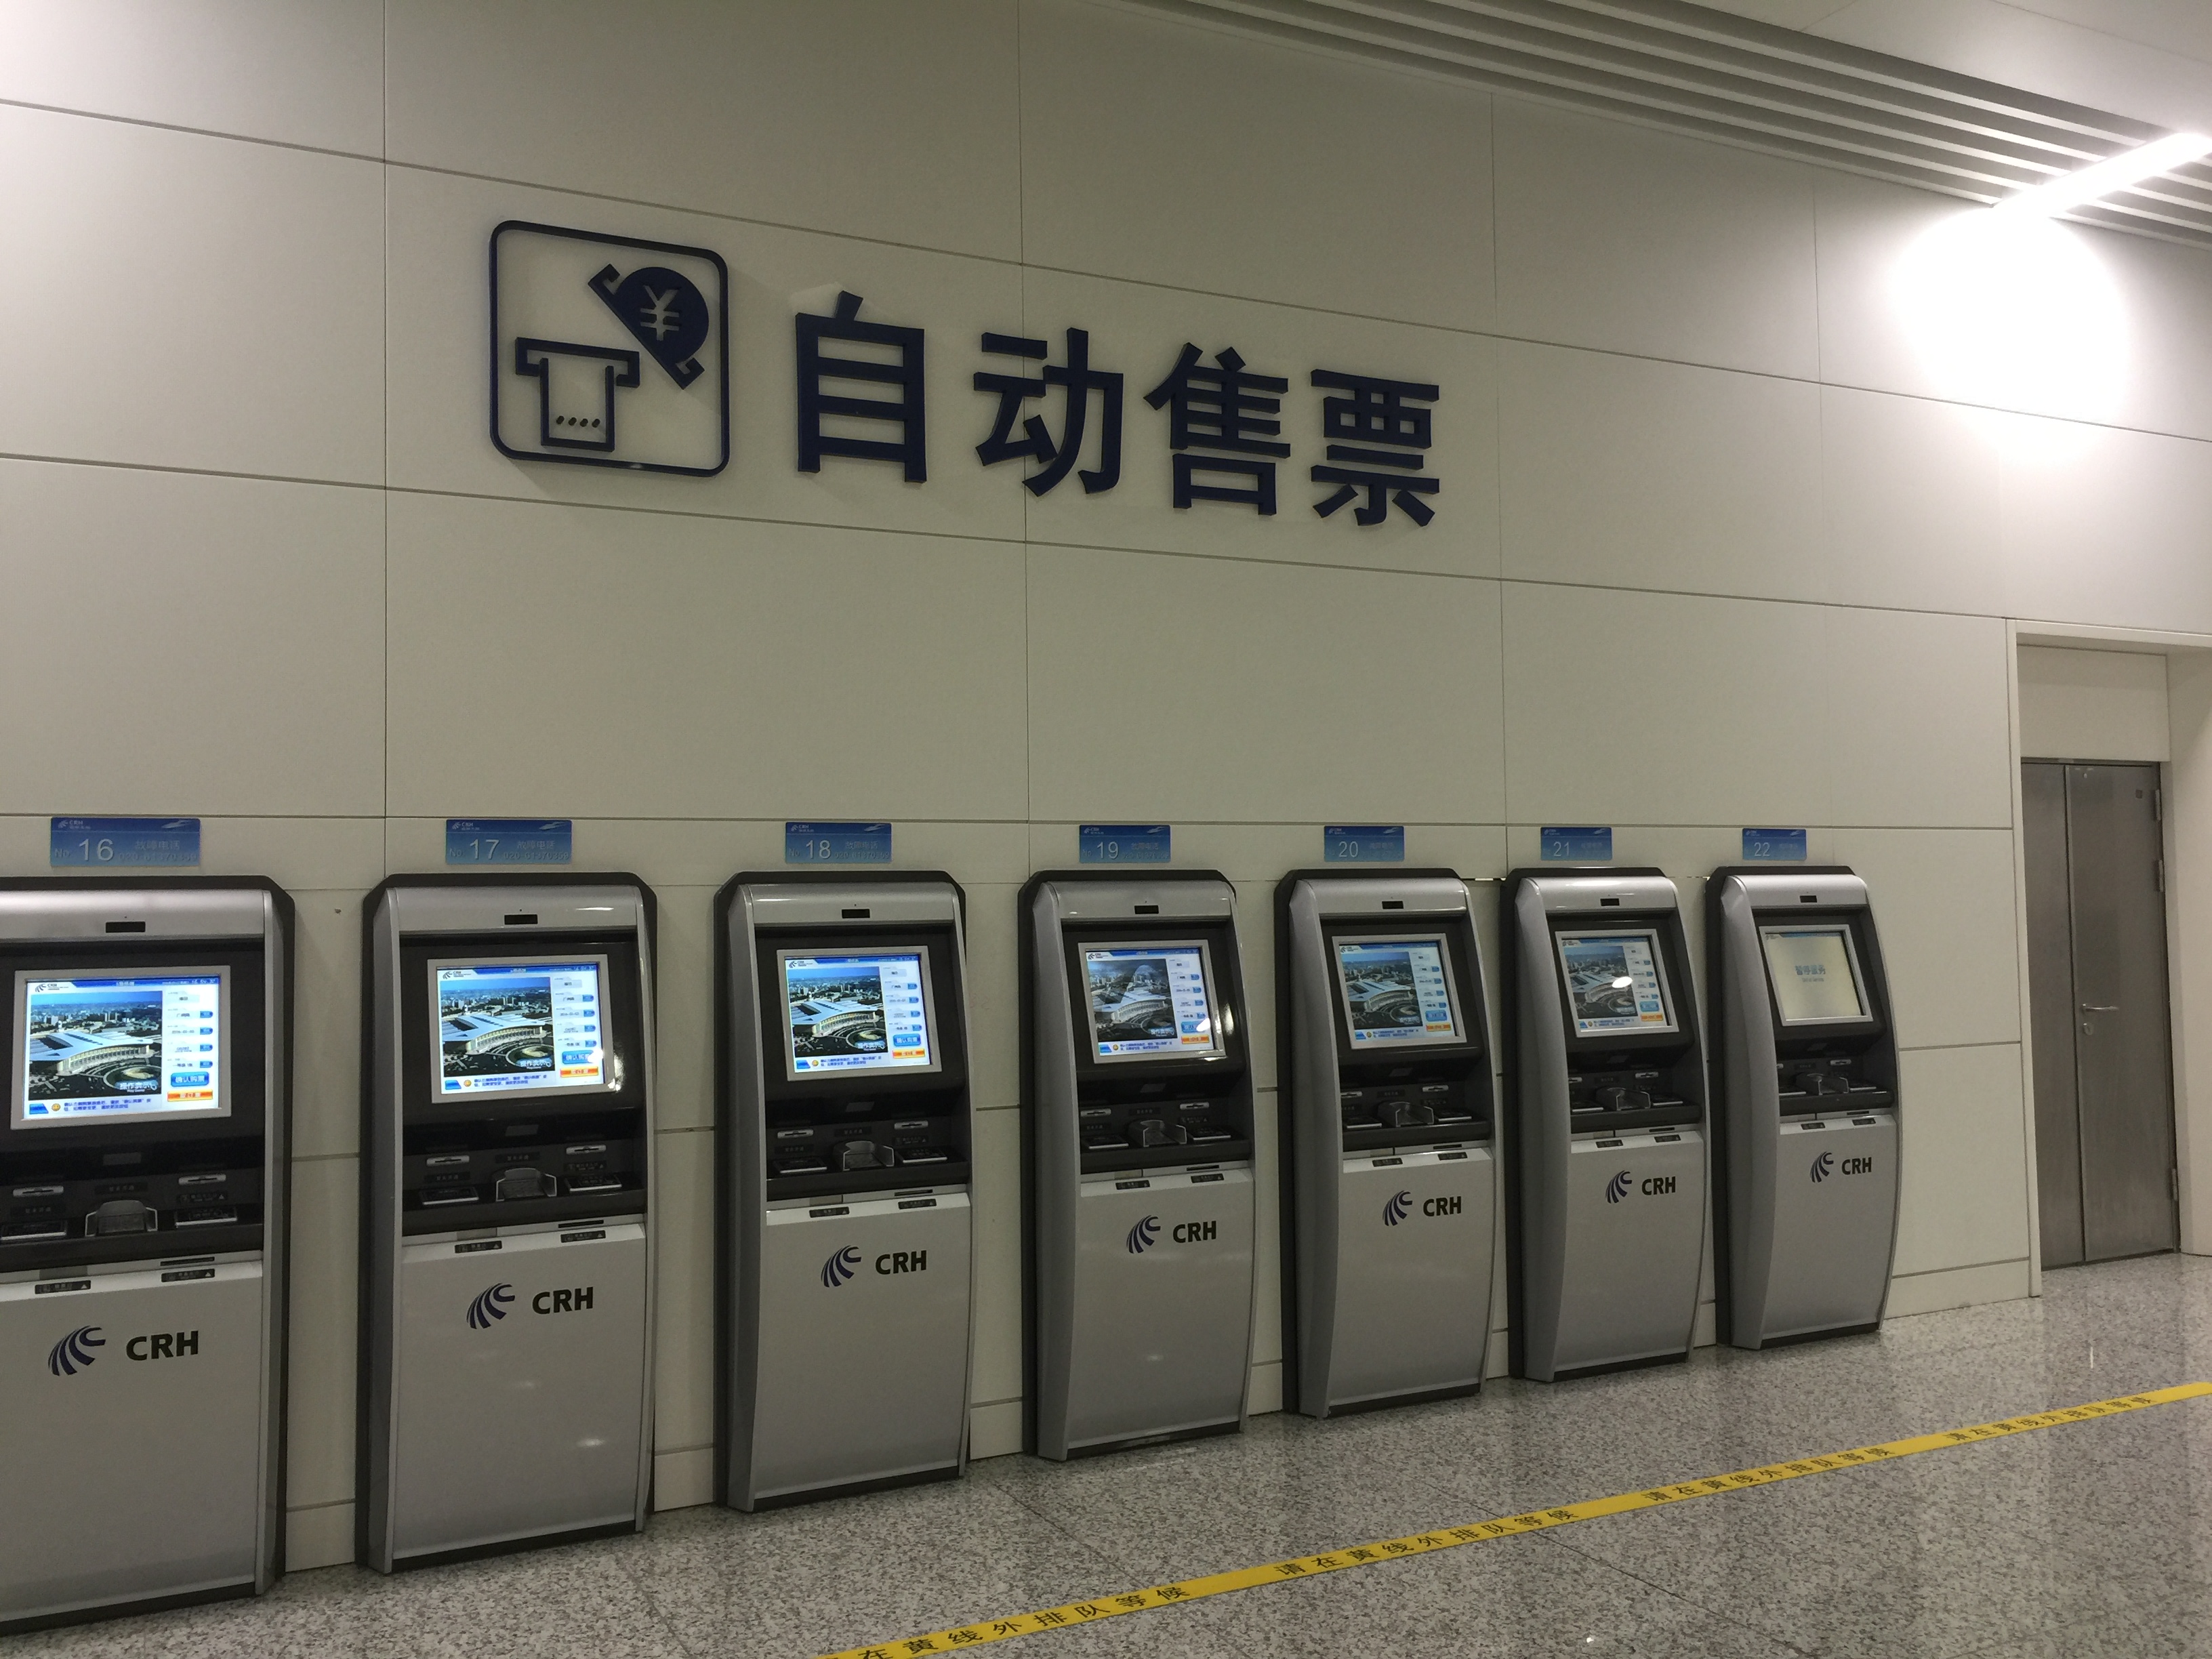 福田站未有自助取票機, 國內身份証以外乘客須到櫃檯